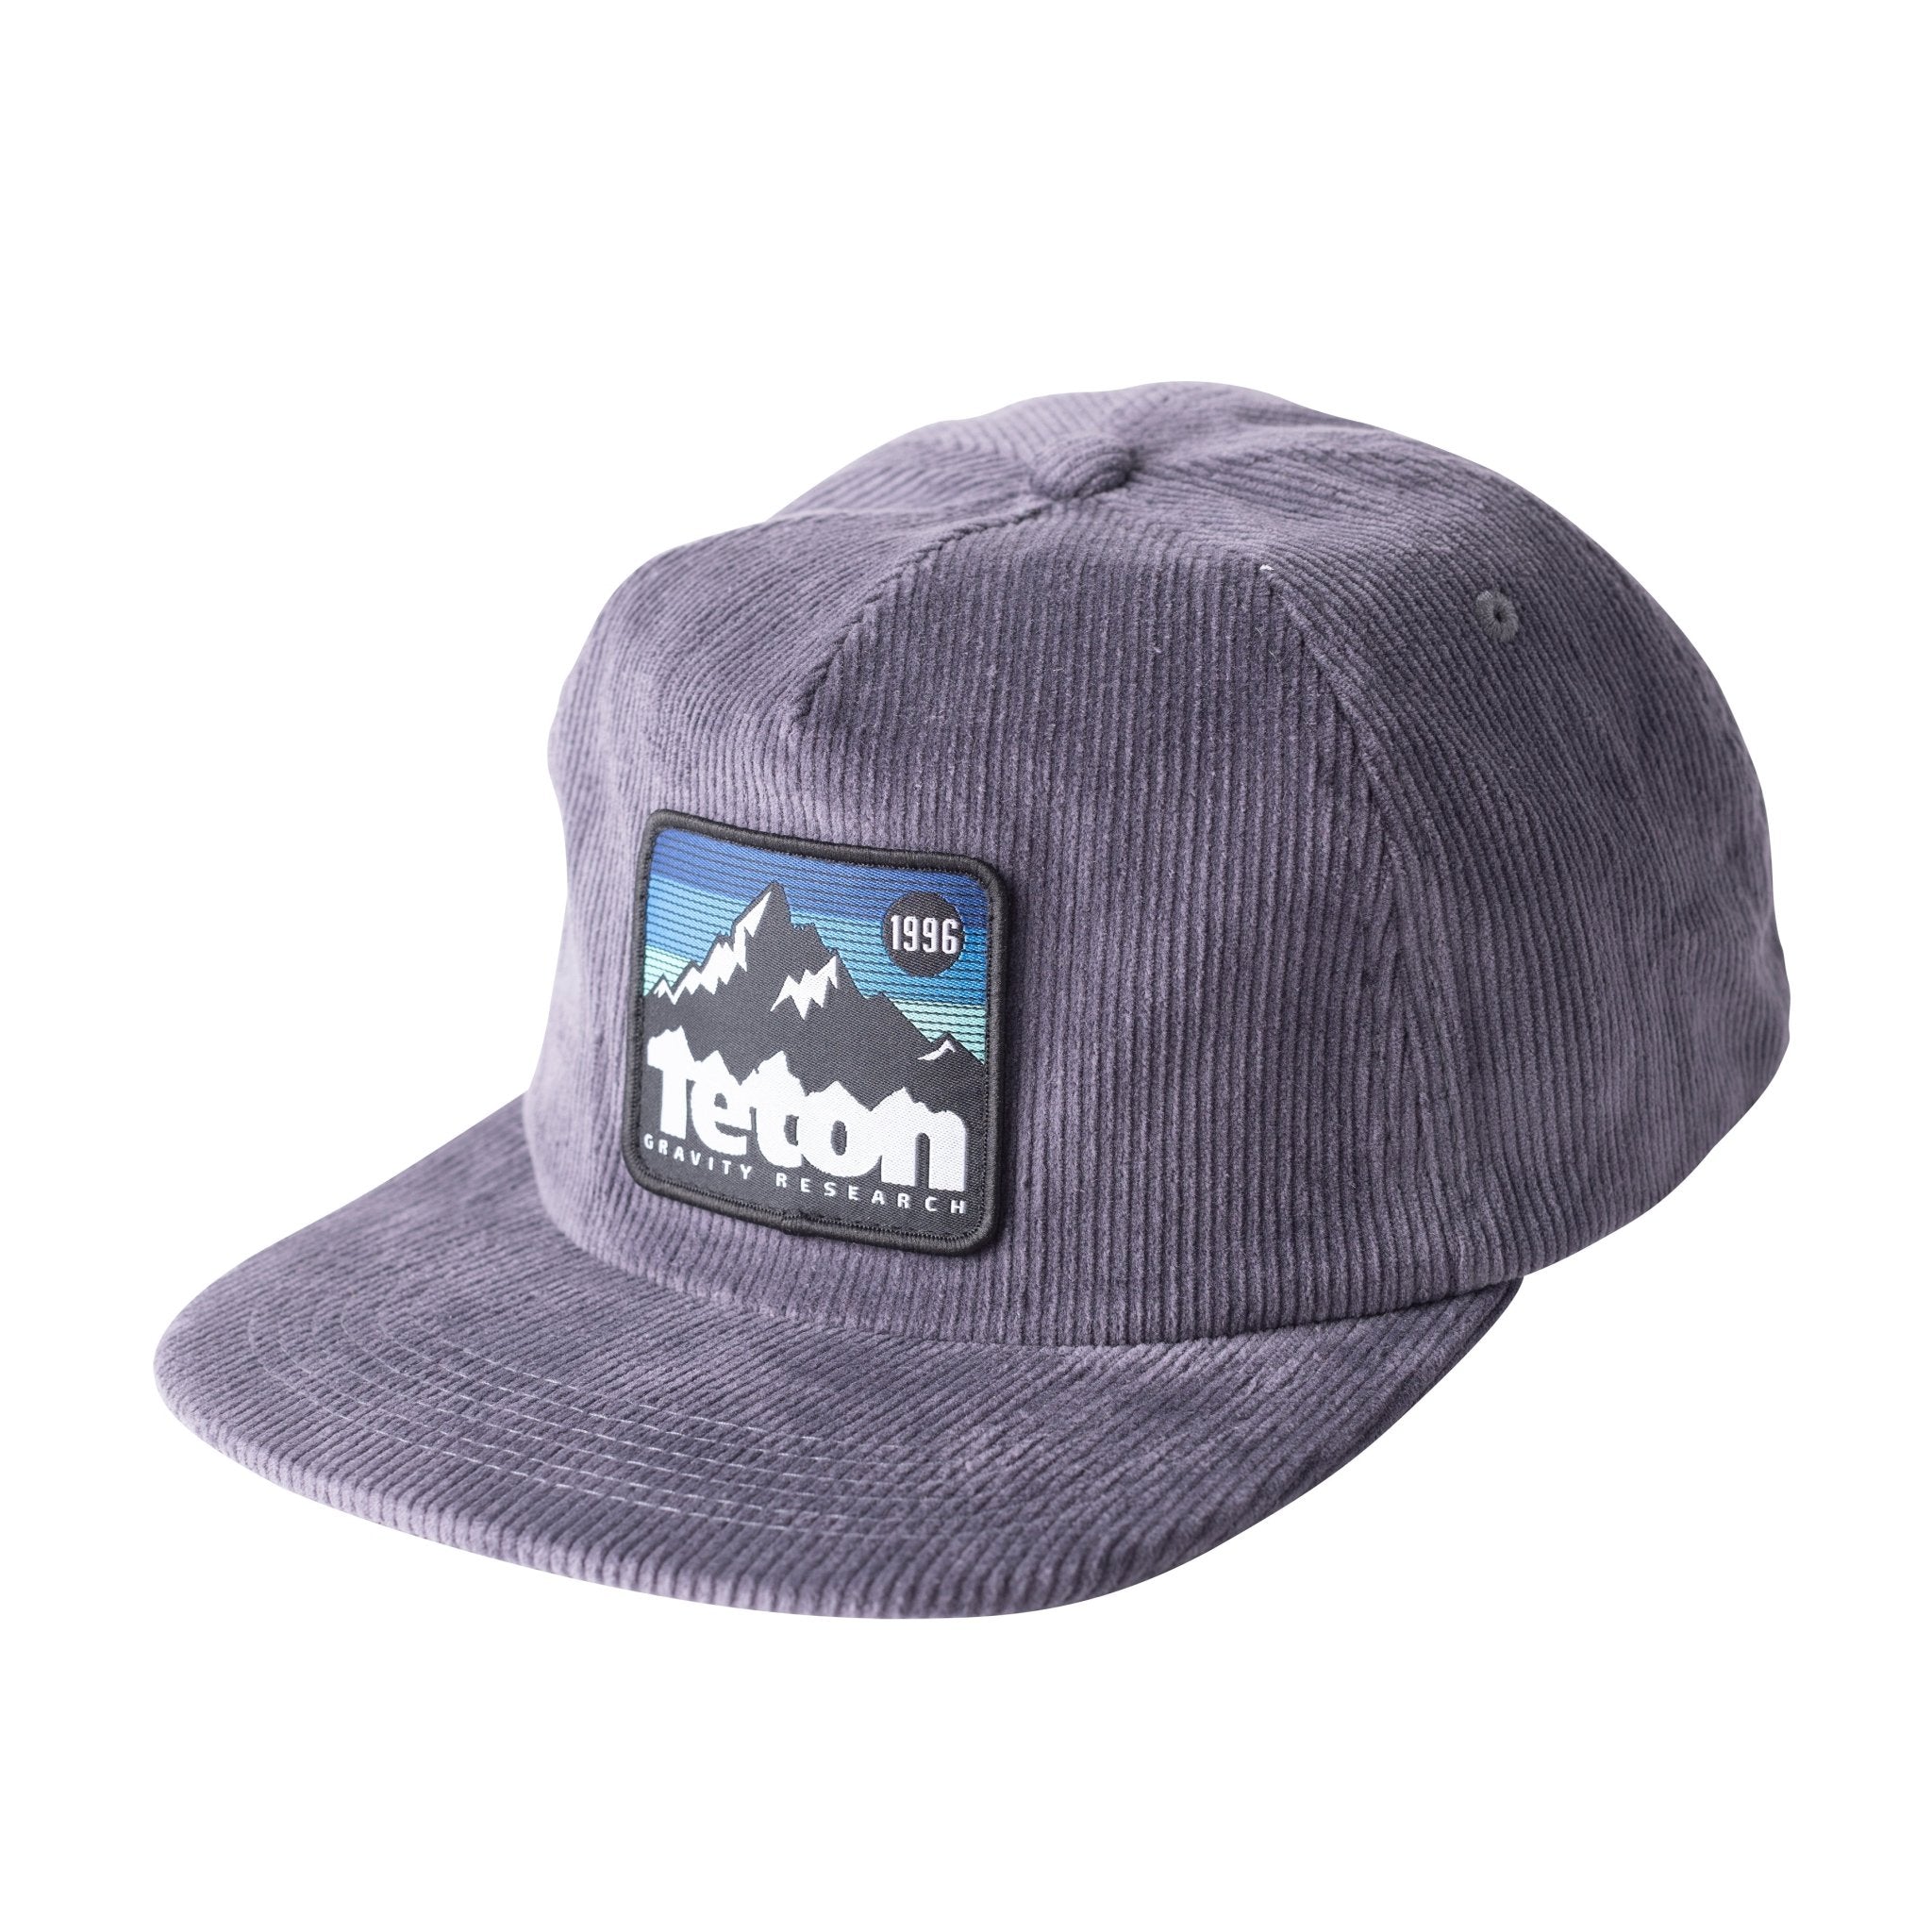 Corduroy '96 Badge Hat - Teton Gravity Research